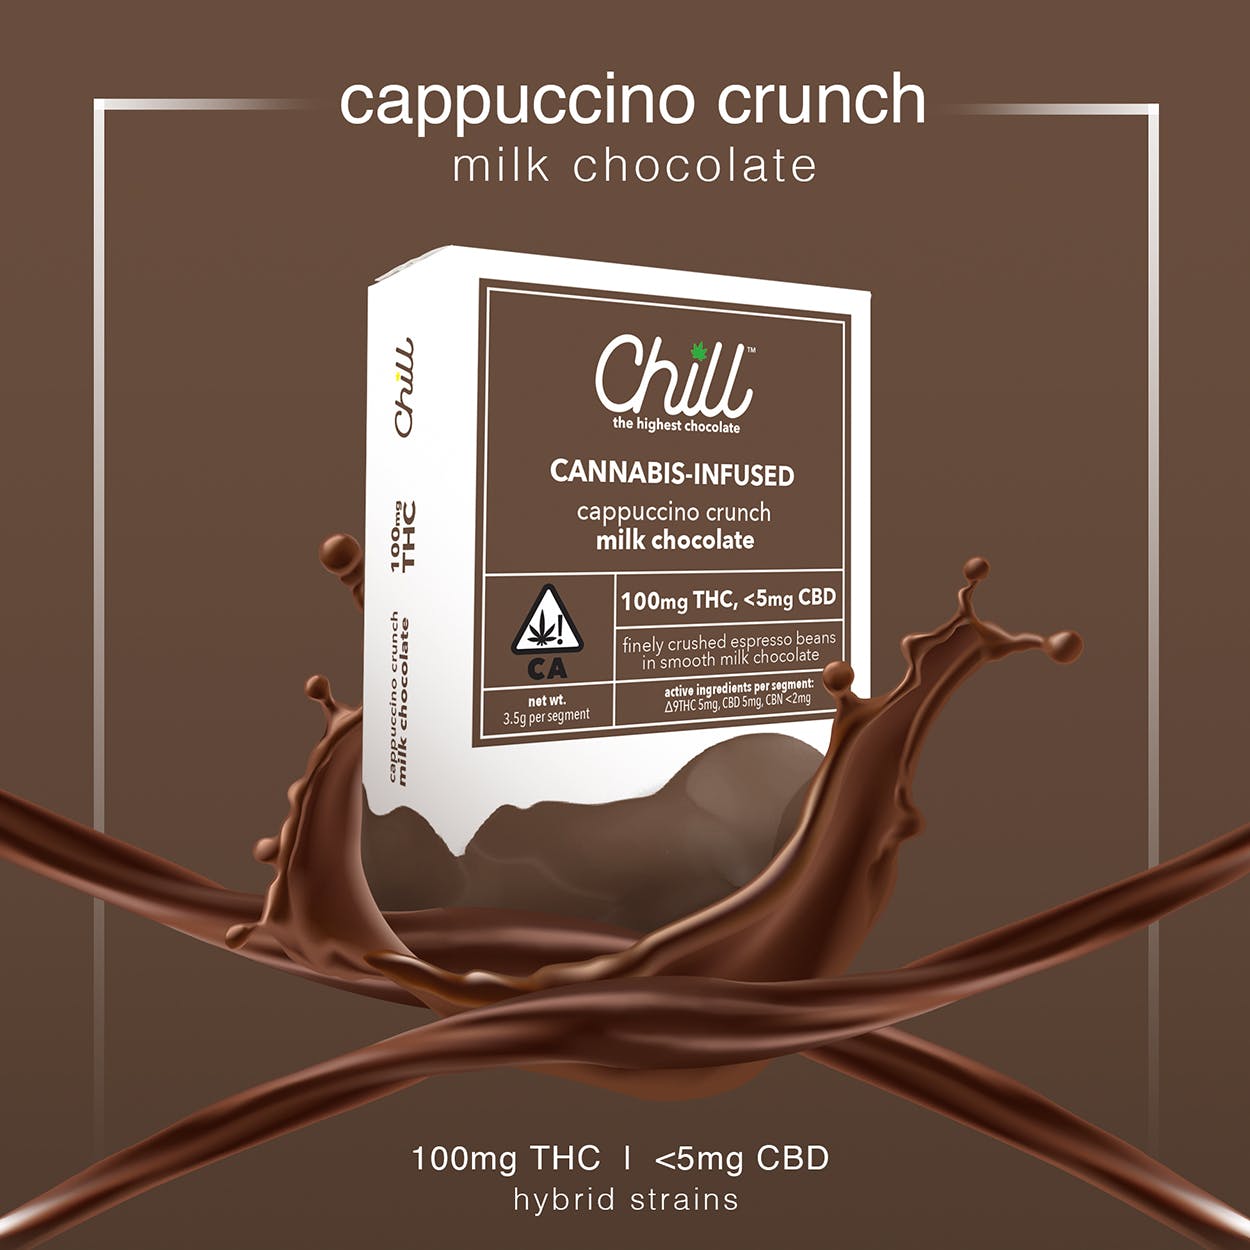 edible-chill-cappuccino-crunch-milk-chocolate